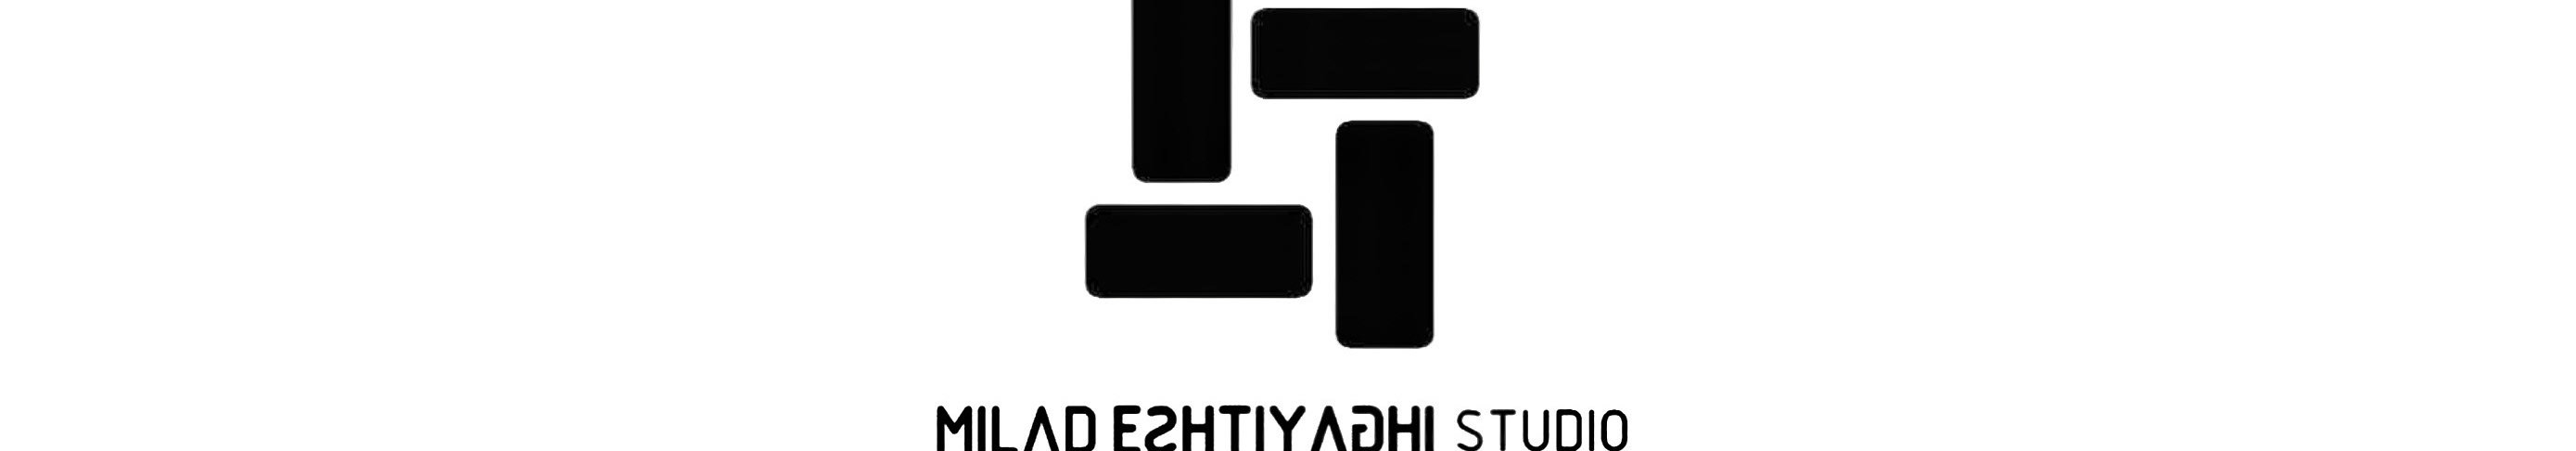 Milad Eshtiyaghi's profile banner